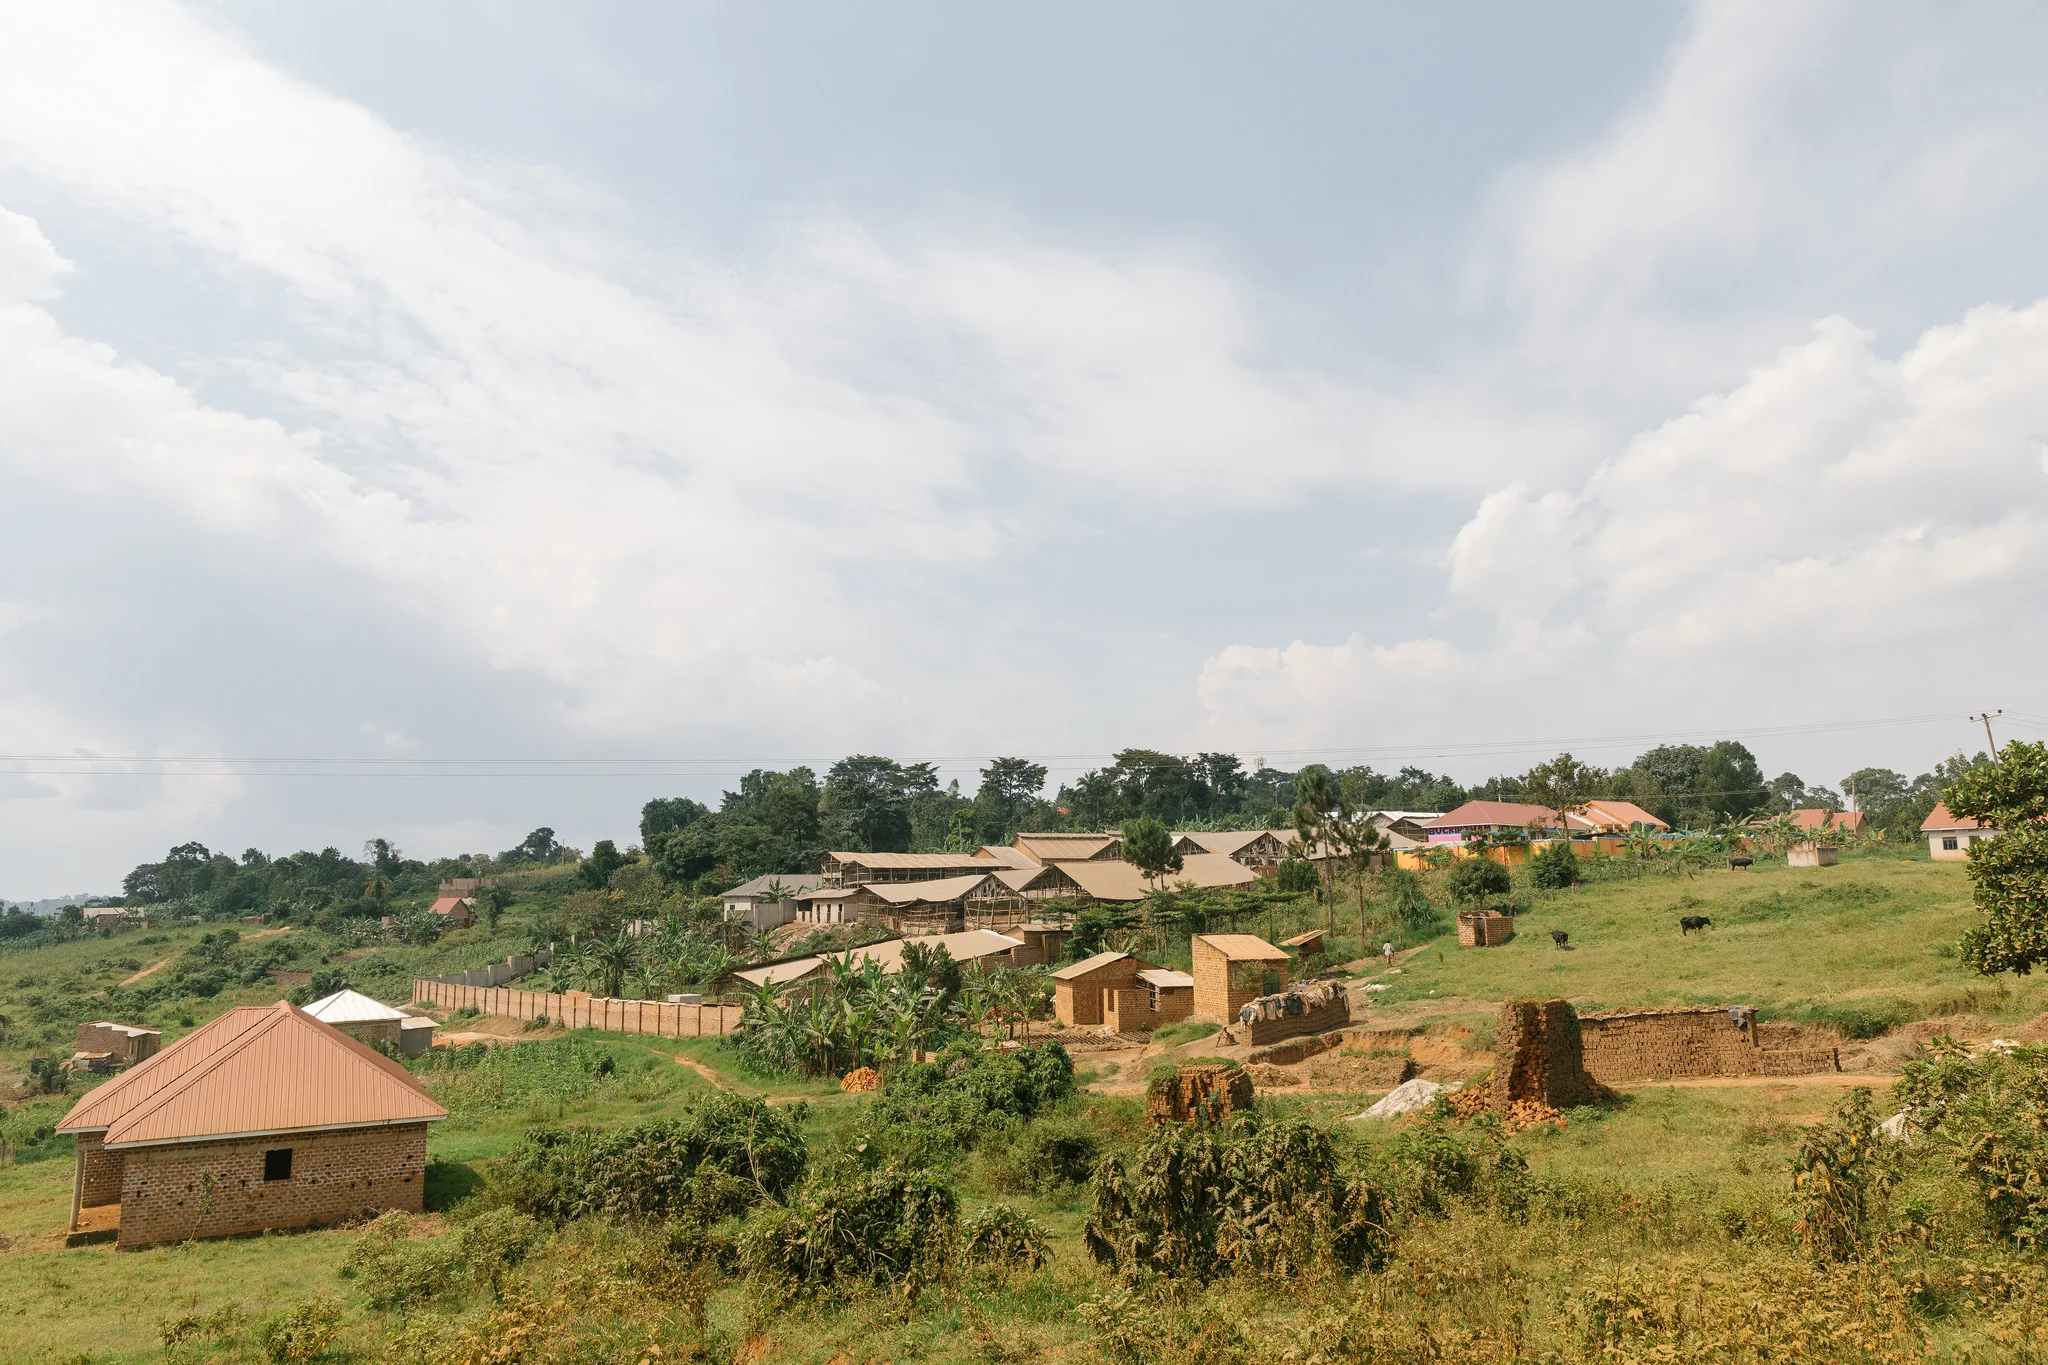 Village in rural Uganda